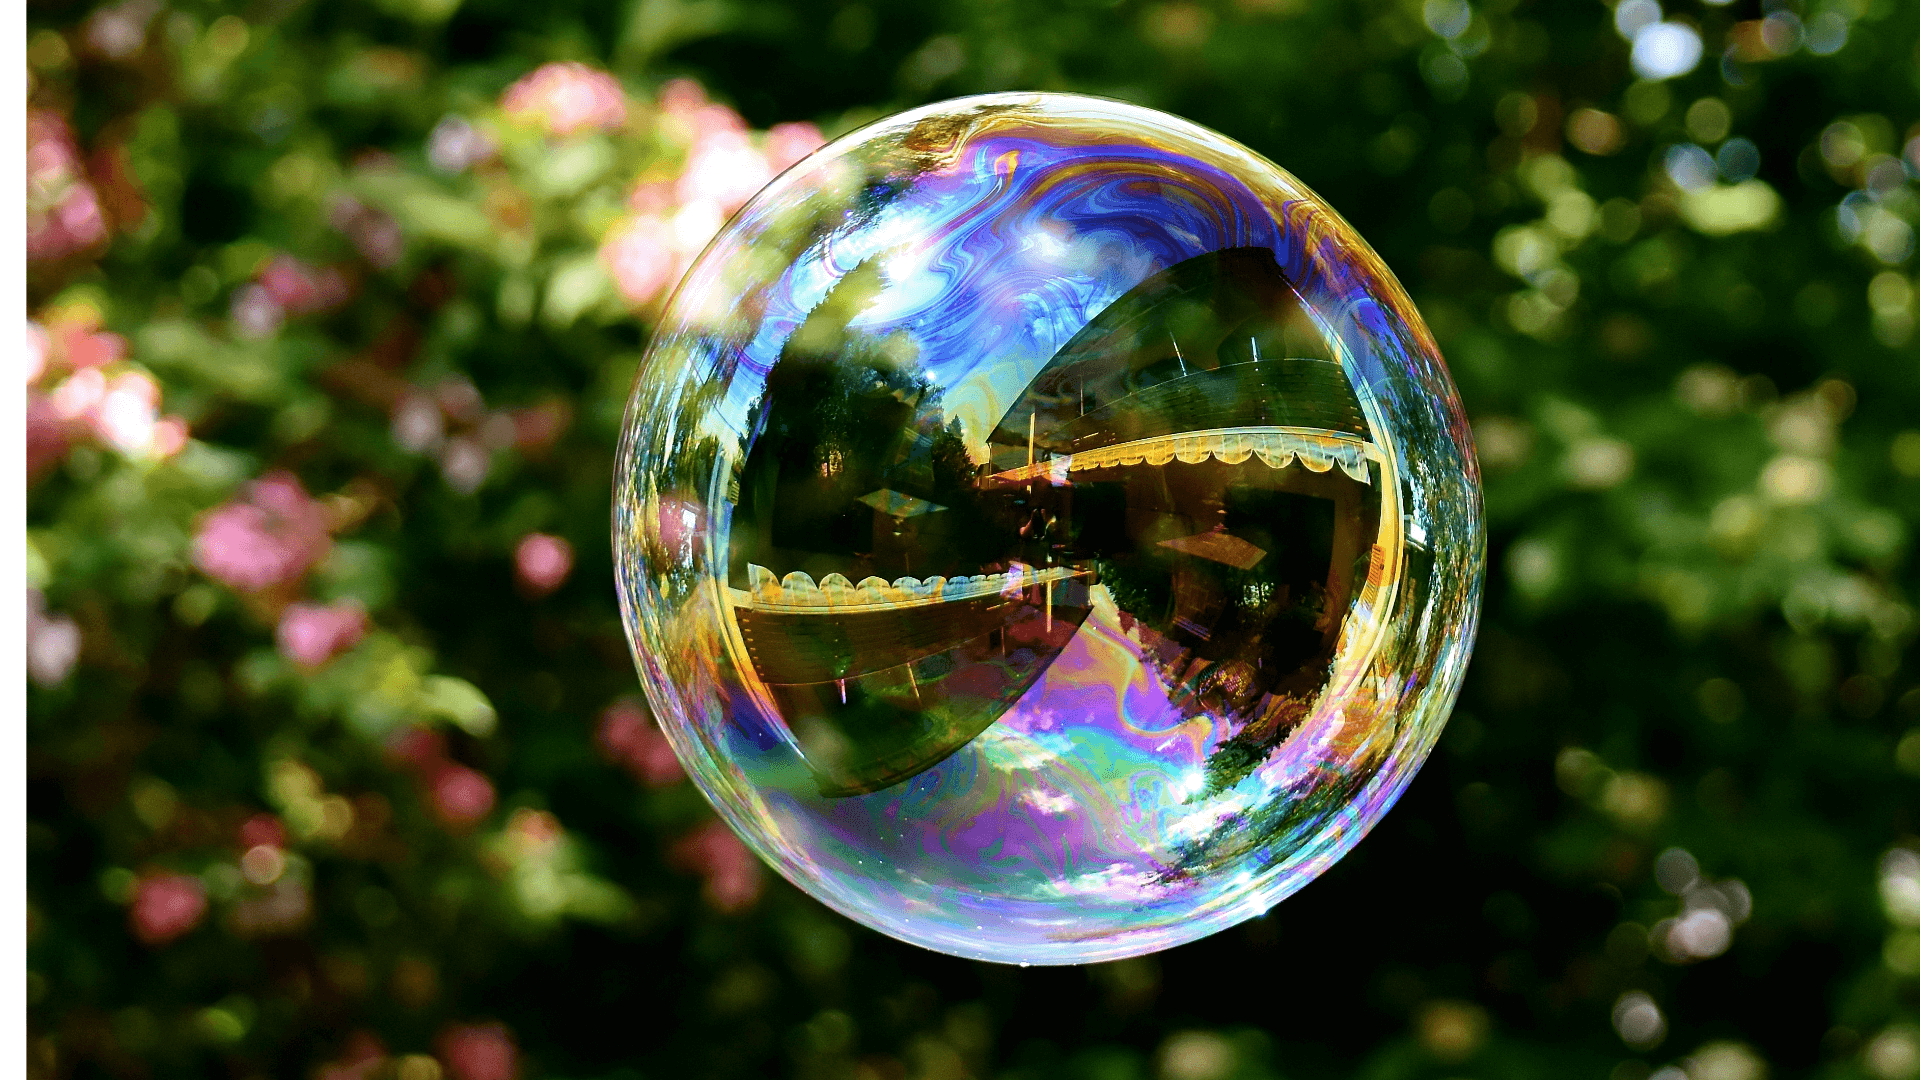 Pourquoi les bulles de savon sont-elles sphériques? – La